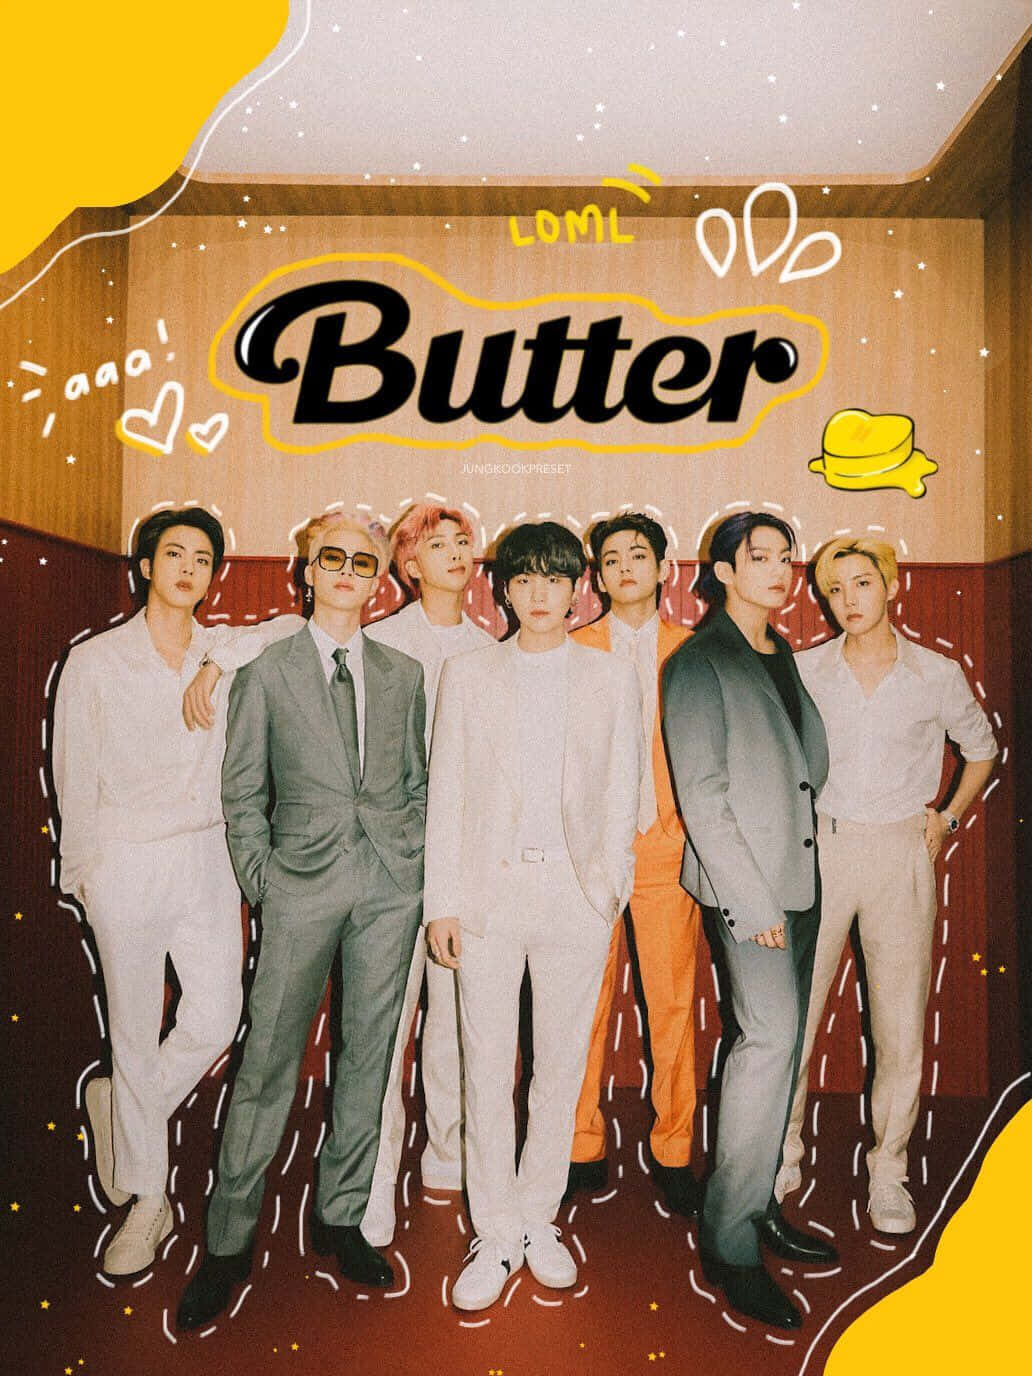 BTS unveils long-awaited summer smash hit "Butter"